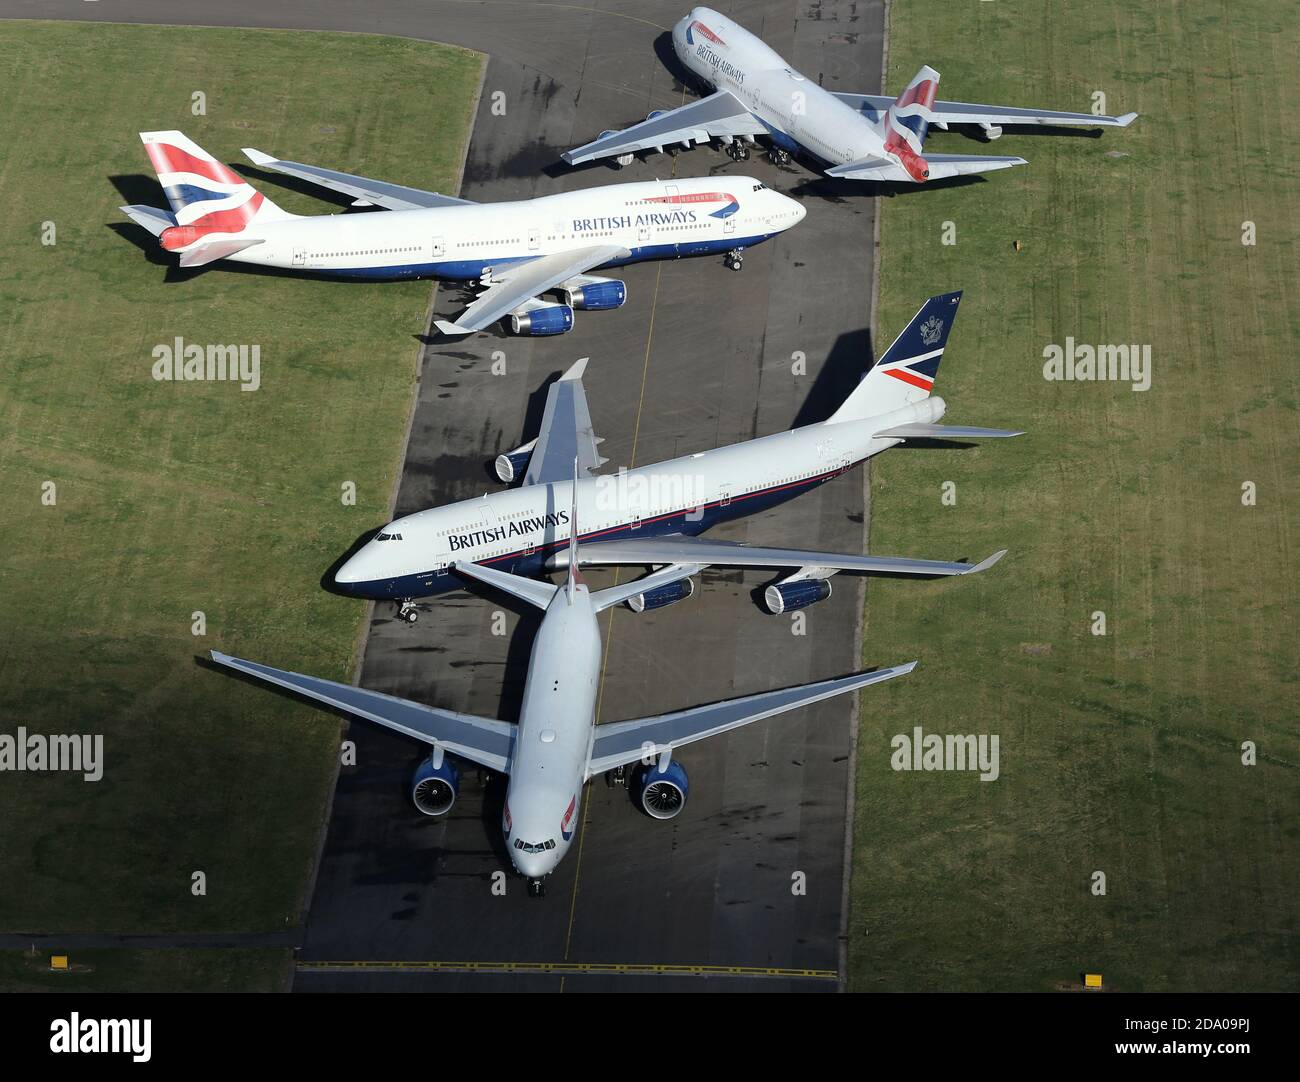 Vista aerea dei British Airways Boeing 747-400 Jumbo Jets all'aeroporto di Cardiff prima di effettuare il loro volo finale per essere staccati. Foto Stock